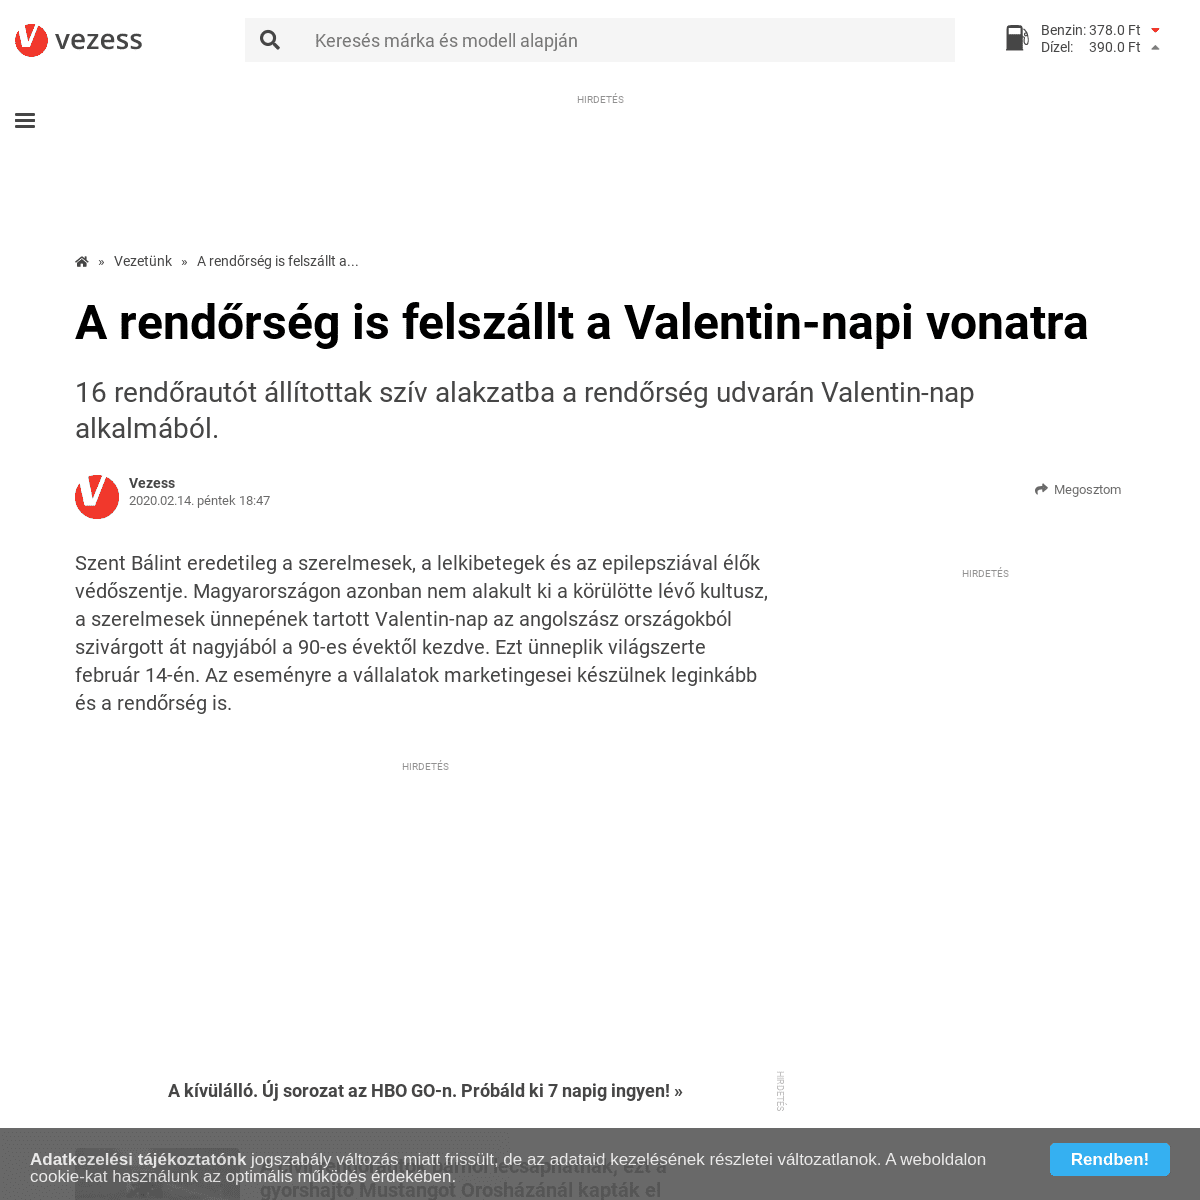 A complete backup of www.vezess.hu/vezetunk/2020/02/14/a-rendorseg-is-felszallt-a-valentin-napi-vonatra/